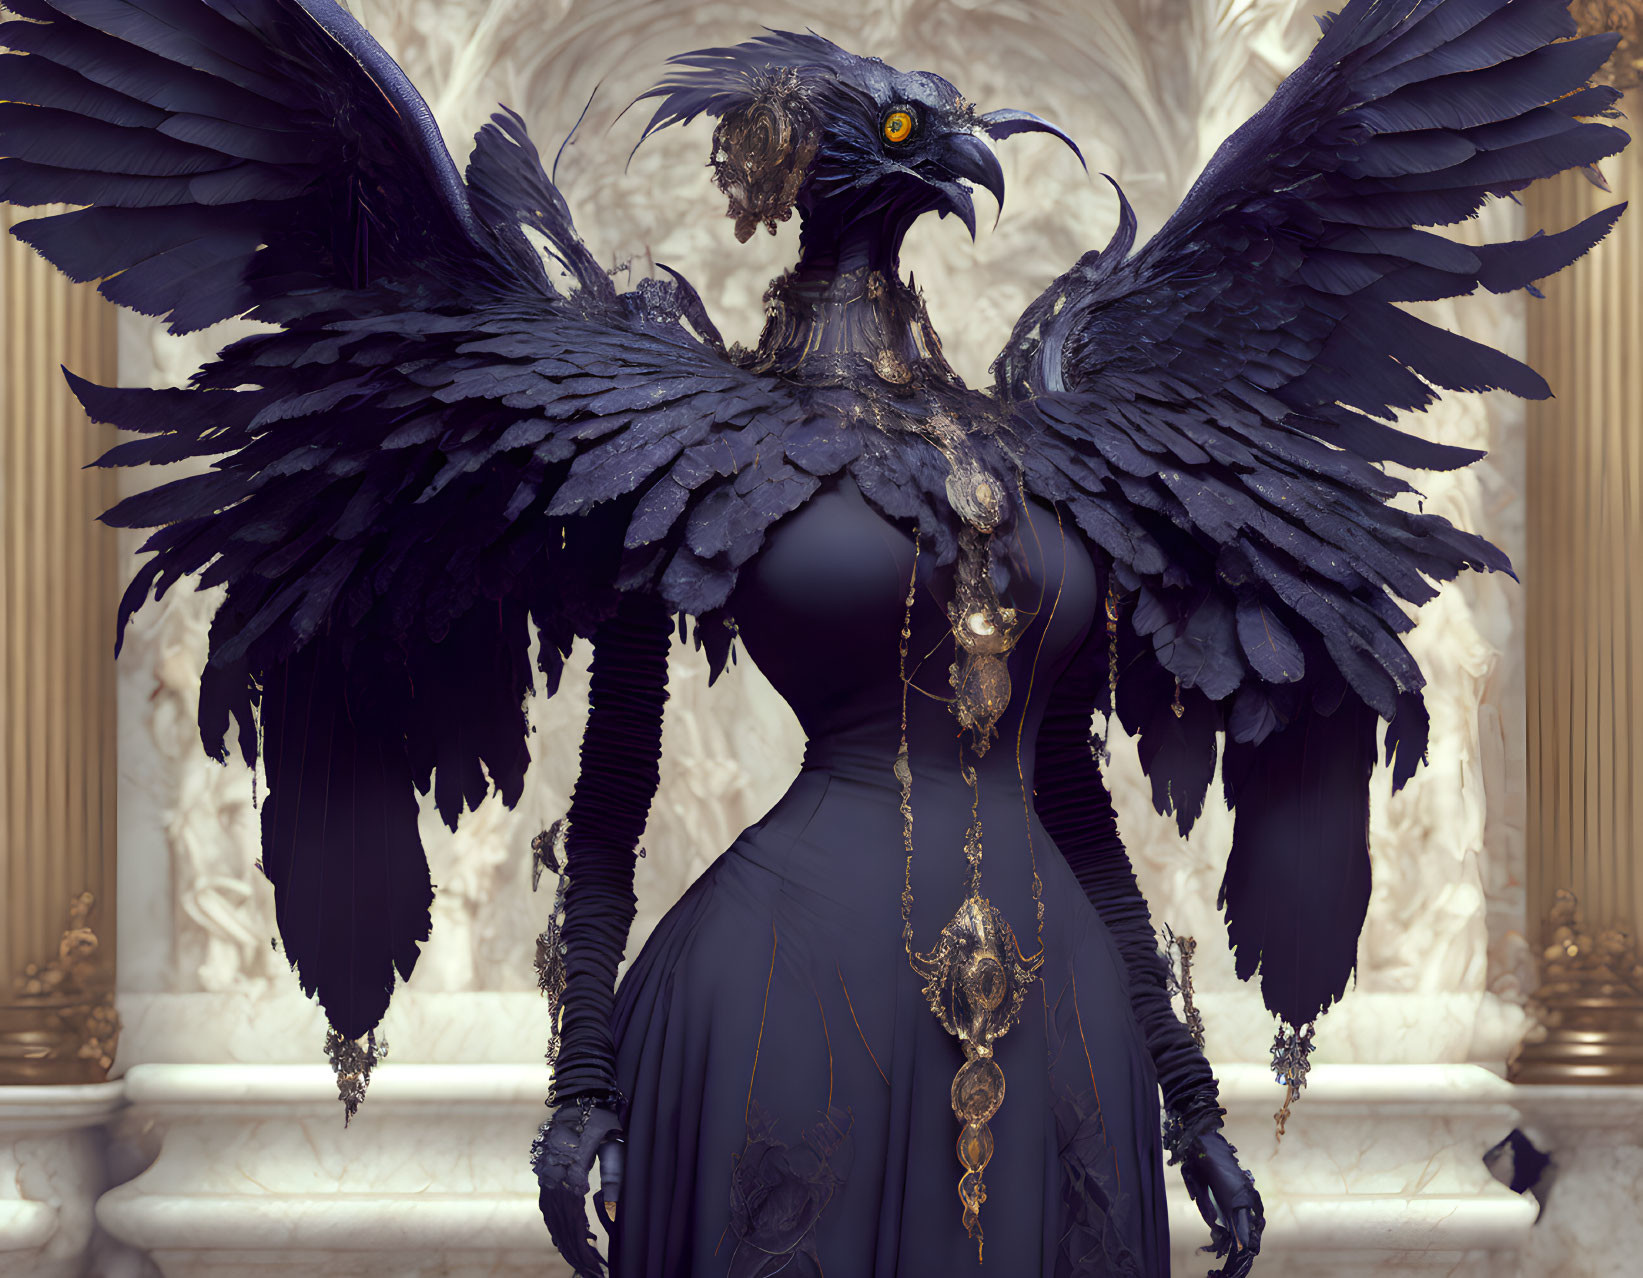 Ravengirl